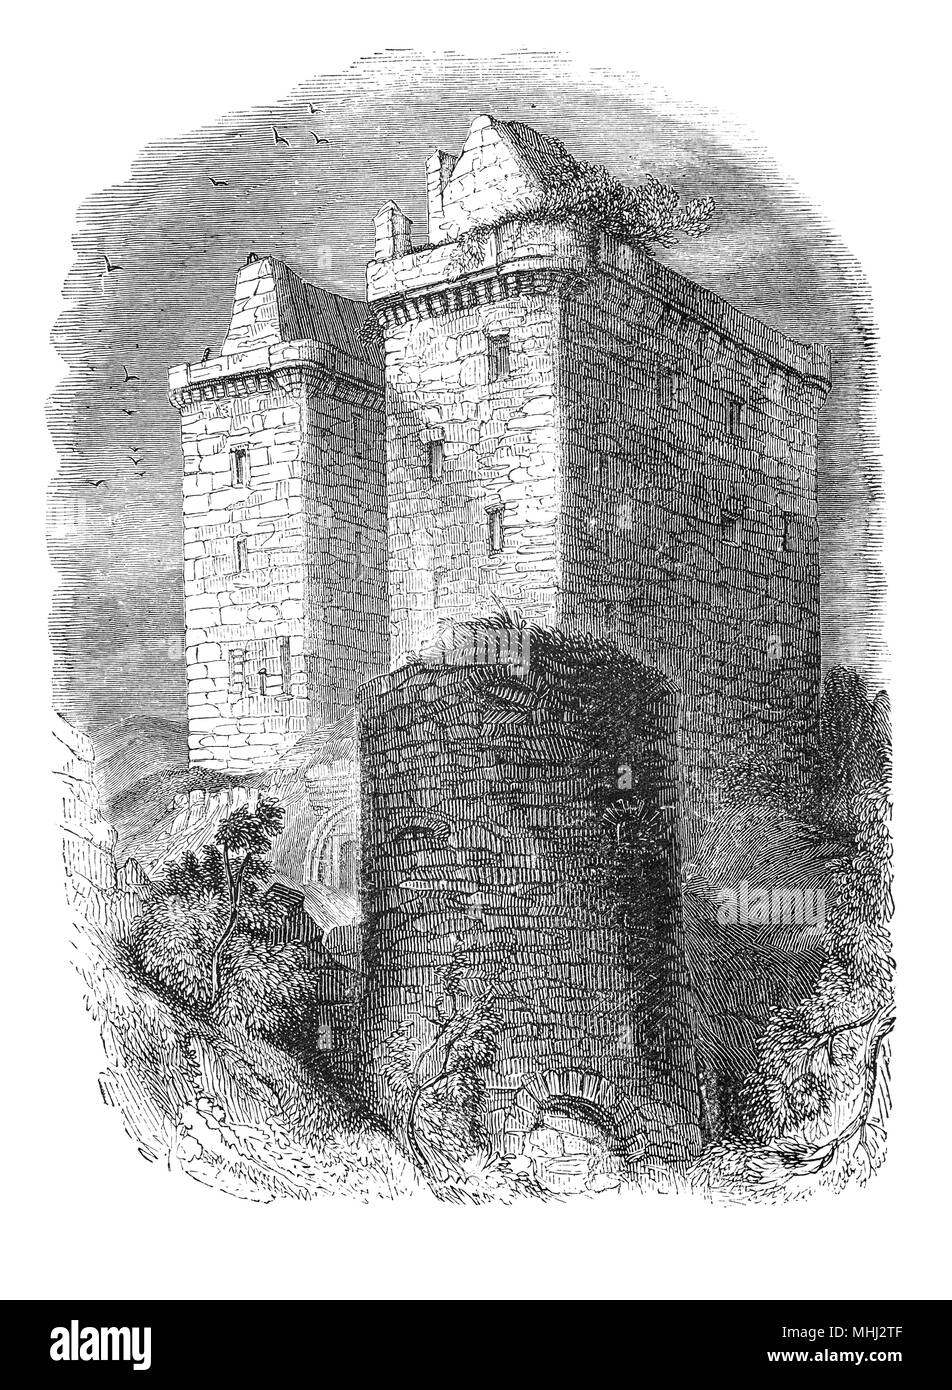 Borthwick Castle è uno dei più grandi e meglio conservate medievali superstiti fortificazioni scozzese. Esso si trova a dodici miglia a sud-est di Edimburgo, a est del villaggio di Borthwick, su un sito protetto su tre lati da una ripida caduta in terra. Fu costruita nel 1430 per il Sir William Borthwick, da cui il castello prende il suo nome, un peer scozzese e ambasciatore. Borthwick fu inviato nel 1424 come ostaggio in Inghilterra nel luogo di Giacomo I, che era detenuto da Enrico IV di Inghilterra dopo pirati catturati una nave alla quale è stato legato per la Francia. Foto Stock